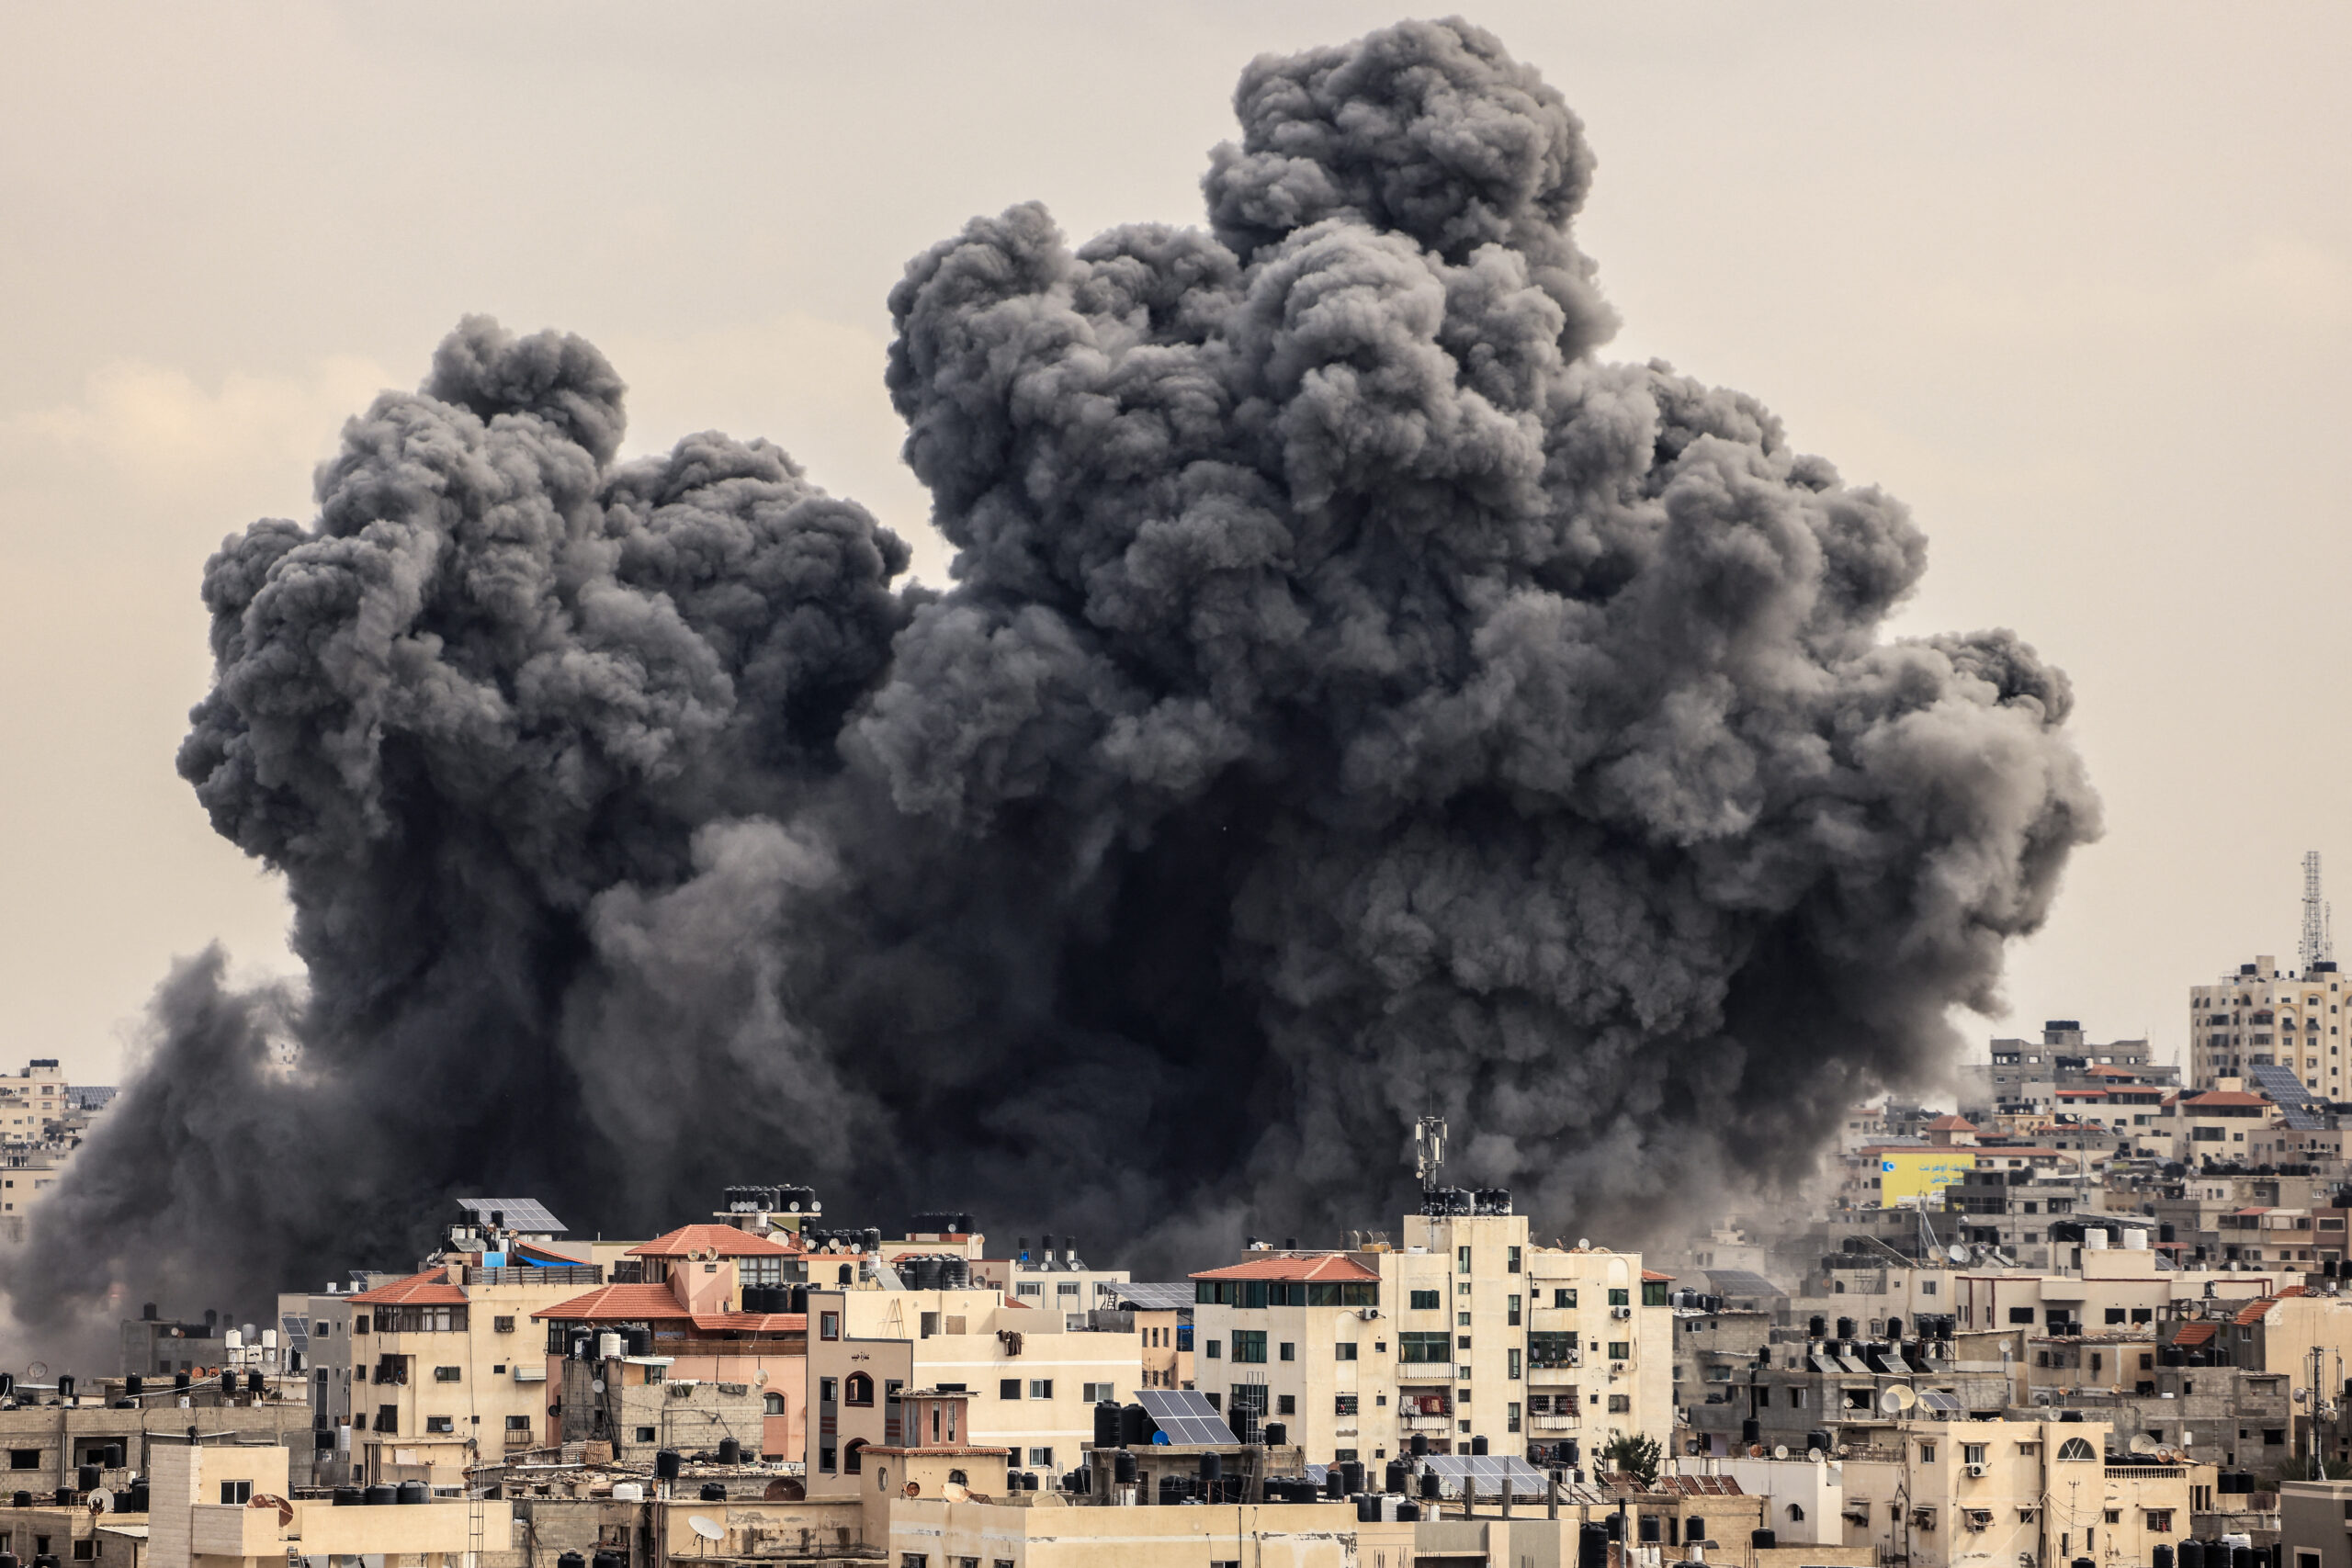 Πόλεμος στο Ισραήλ: Πέντε ειδικοί αναλύουν το πώς η Χαμάς ξεκίνησε μια αναμέτρηση που απειλεί να αιματοκυλήσει τη Μέση Ανατολή